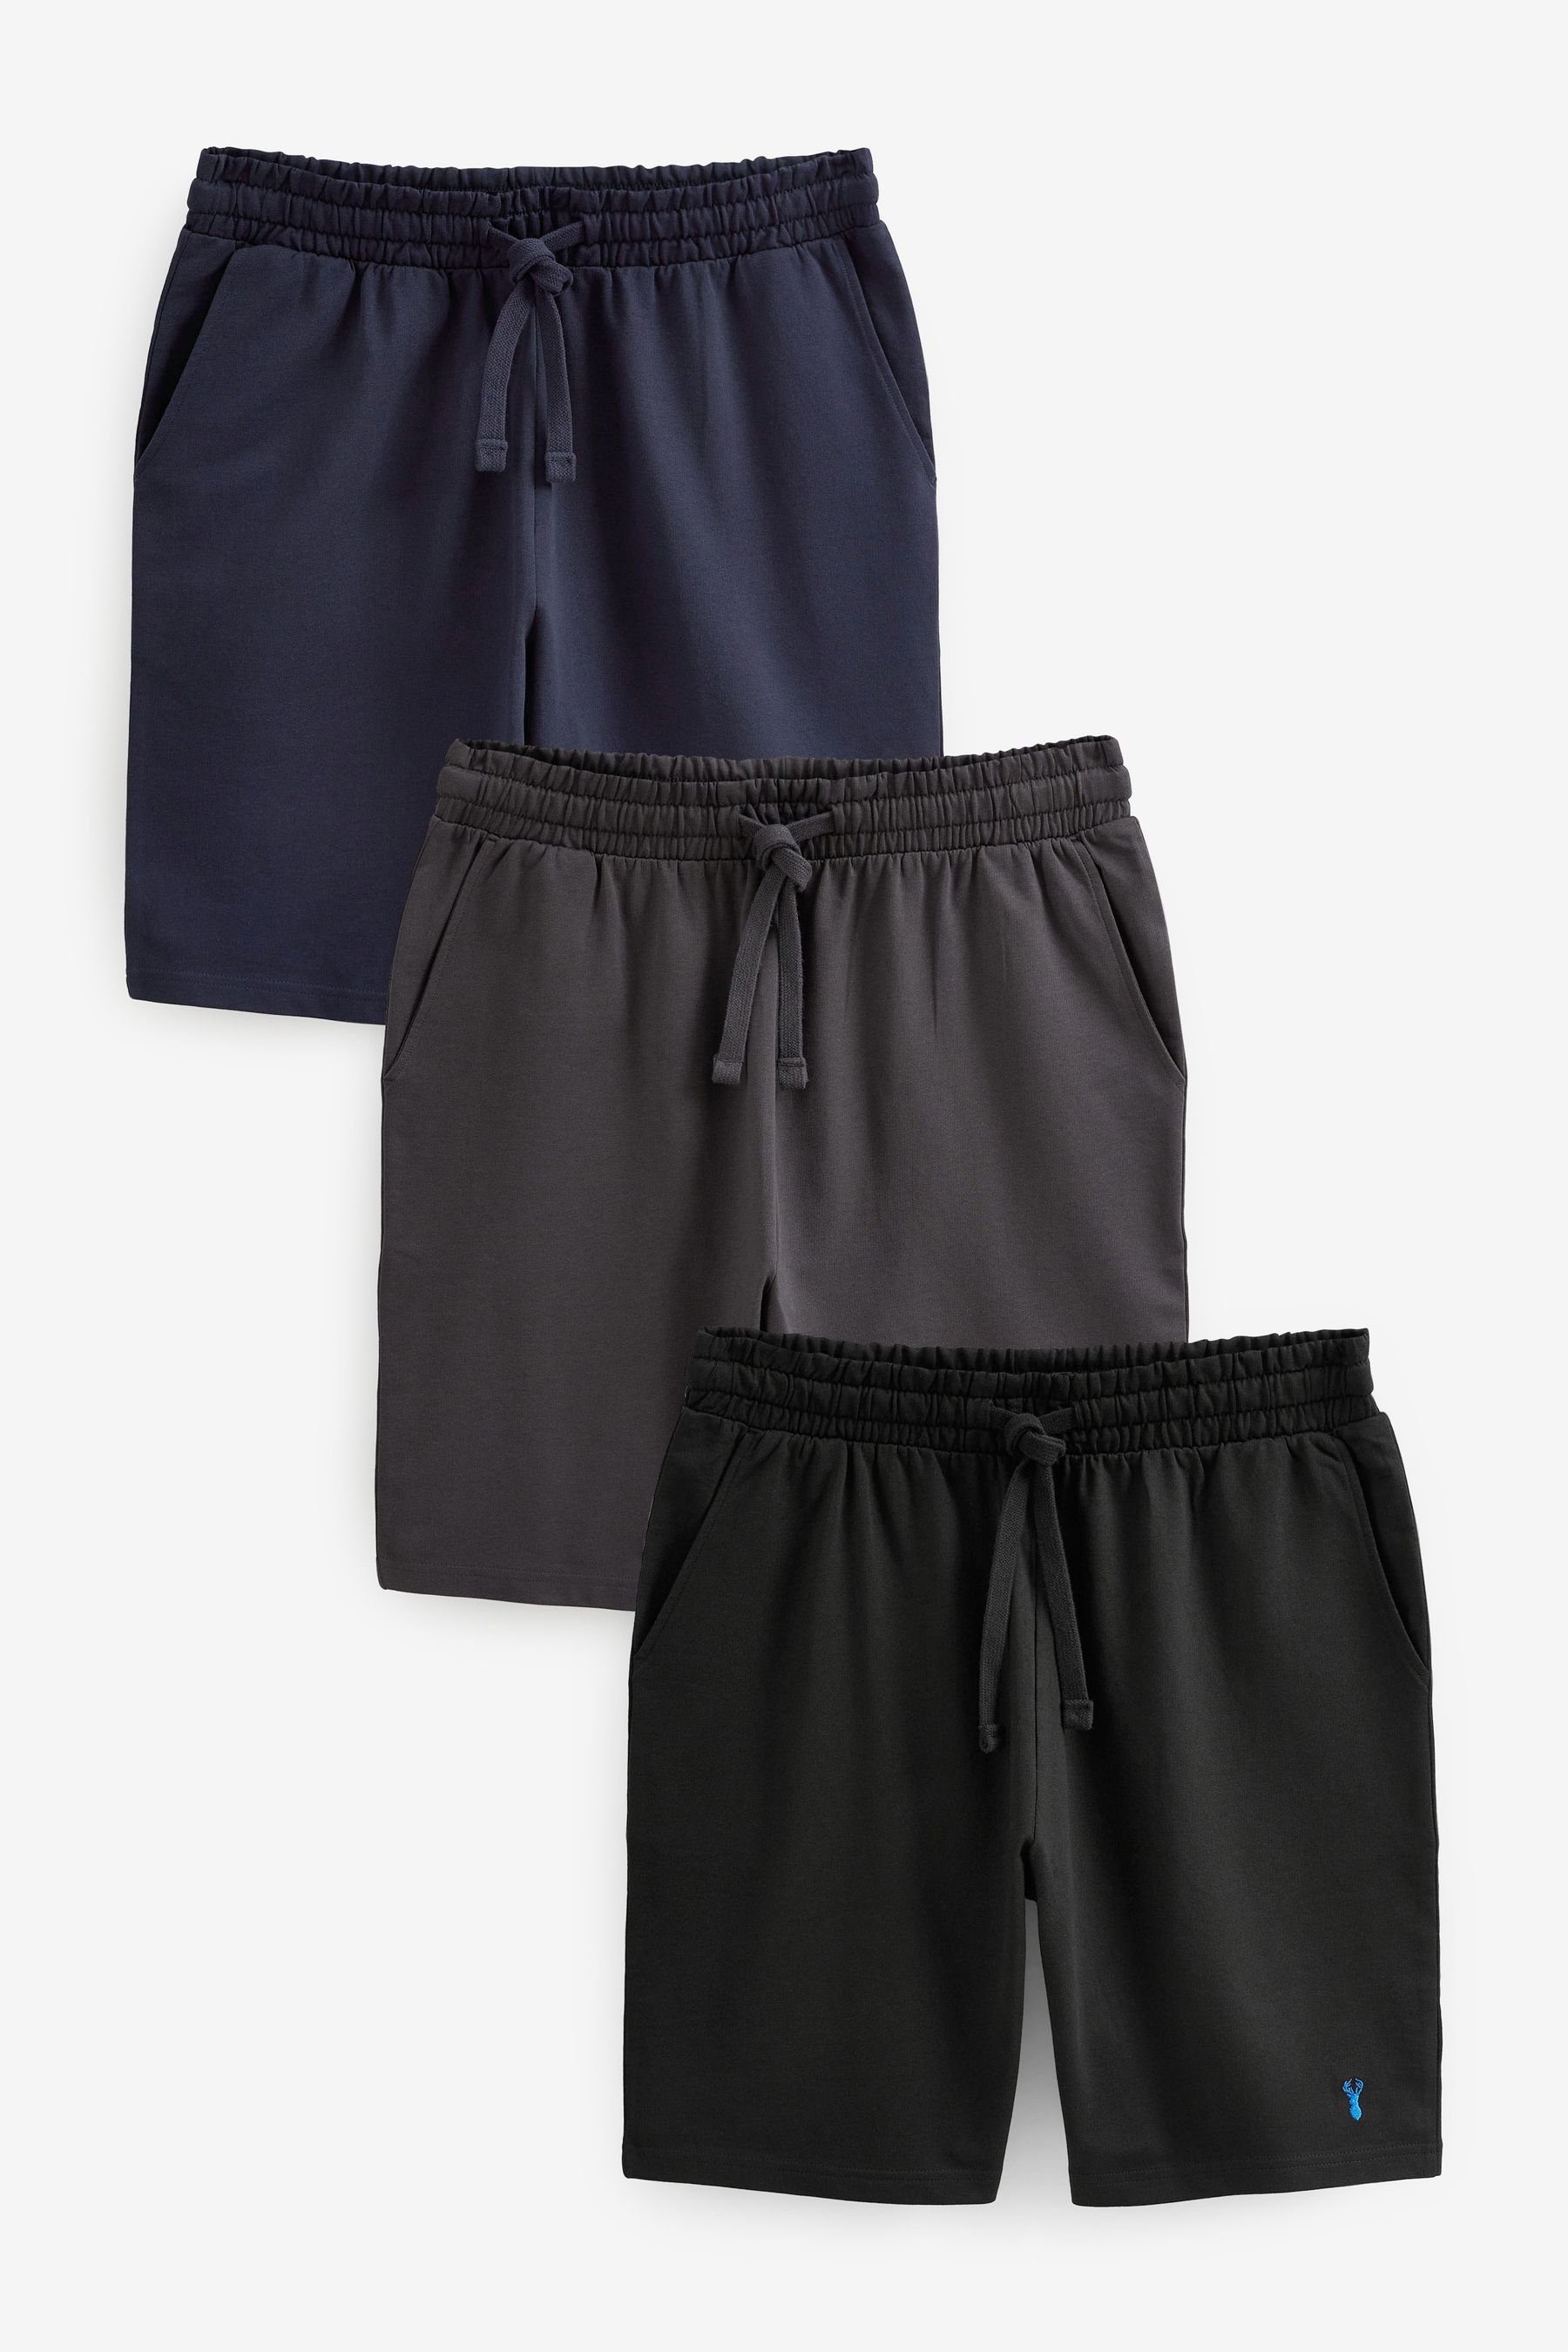 Next Schlafshorts Leichte Shorts, 3er-Pack (3-tlg) Navy Blue/Grey/Black